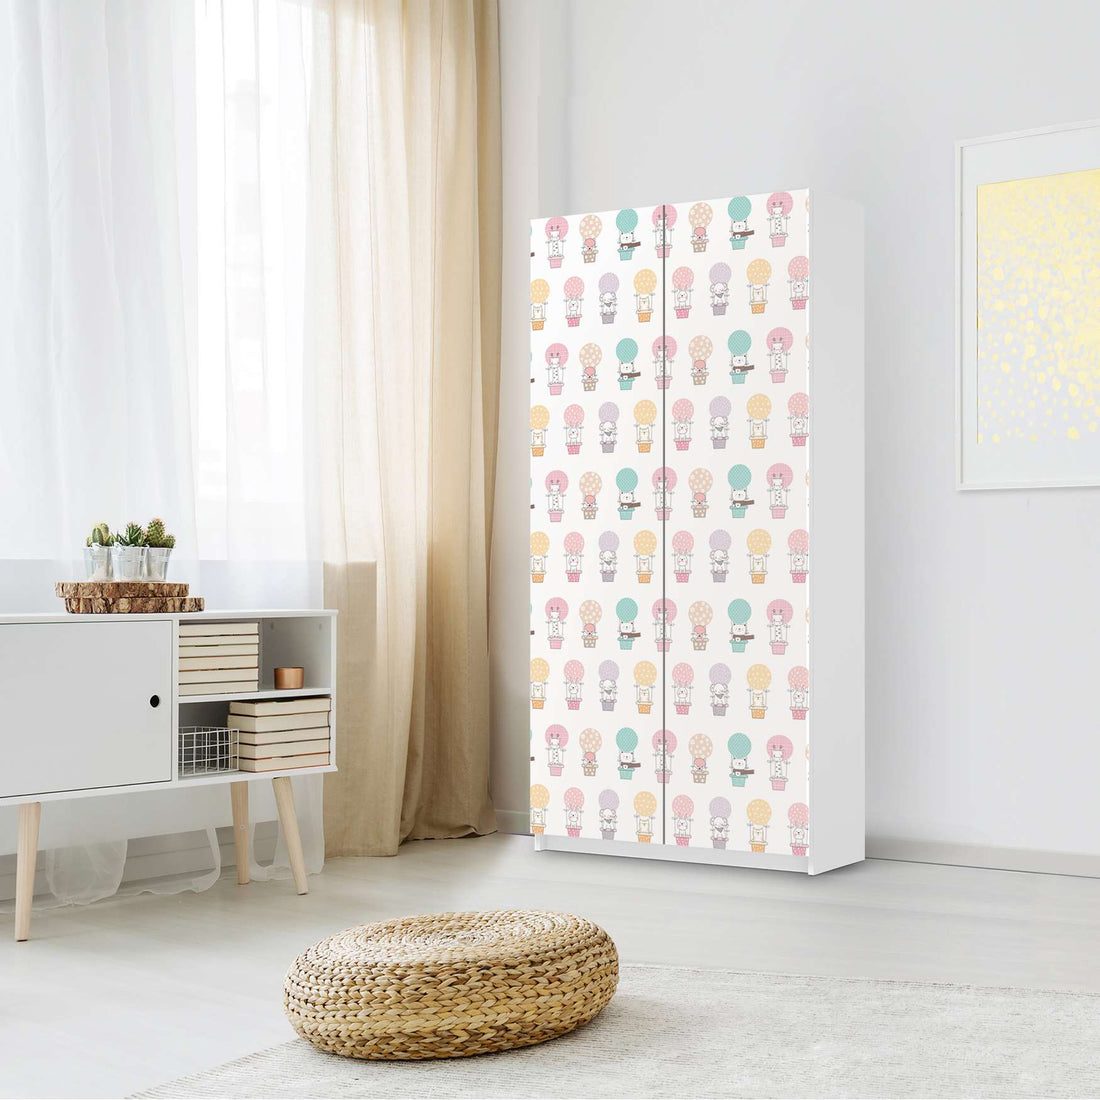 Klebefolie für Möbel Flying Animals - IKEA Pax Schrank 201 cm Höhe - 2 Türen - Kinderzimmer